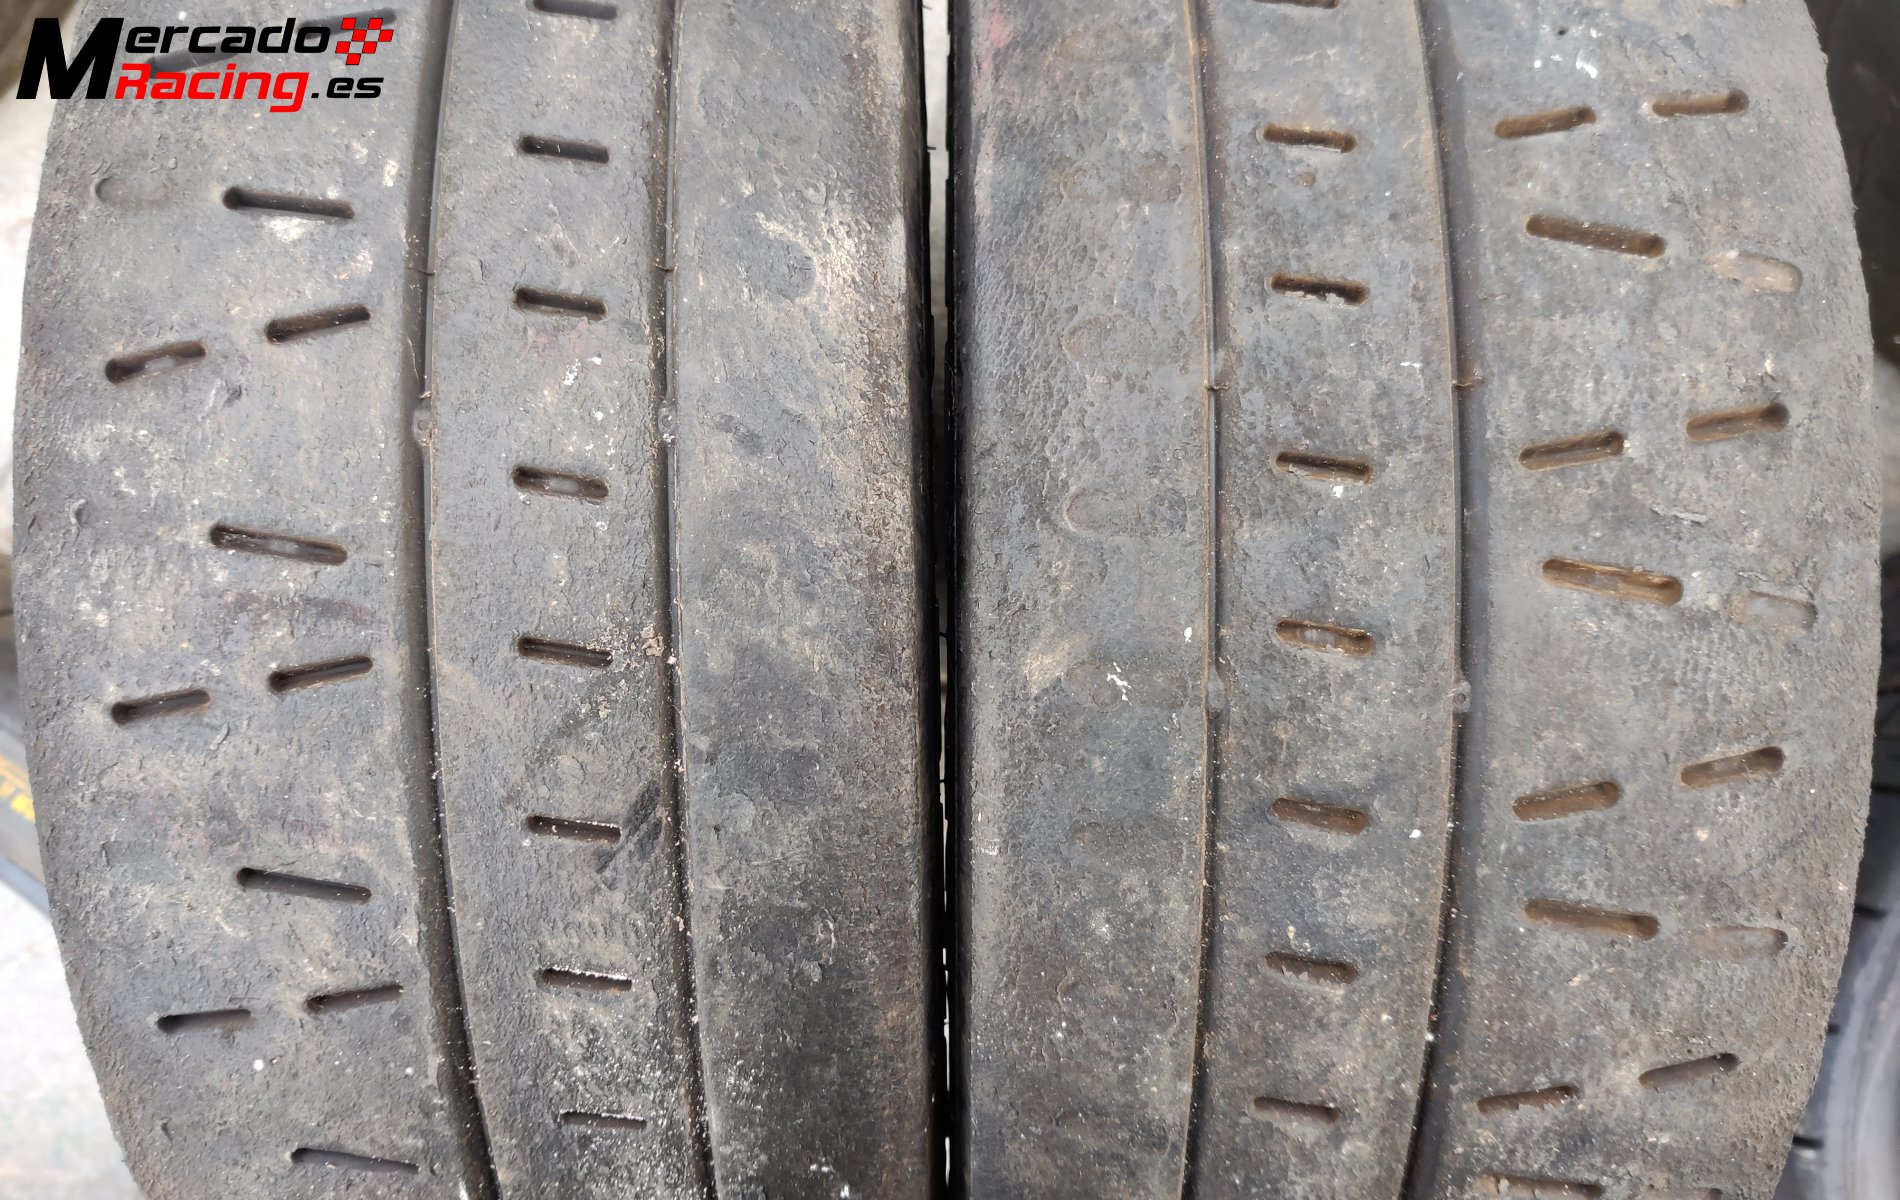 Lote de neumáticos pirelli seco y lluvia